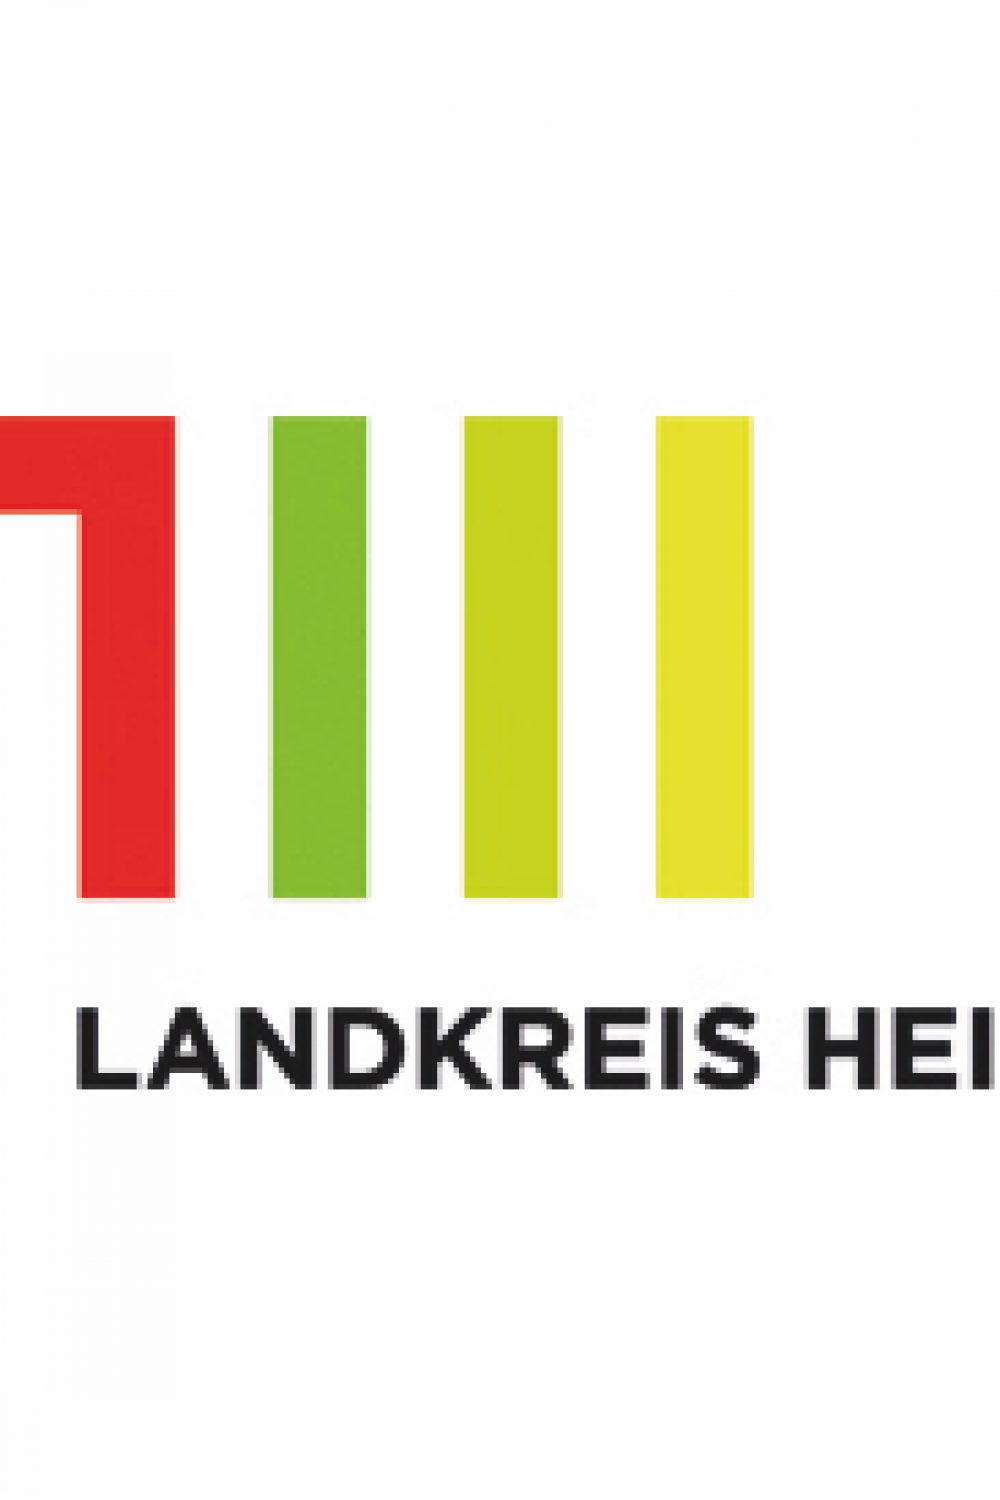 Logo_Landkreis_Heilbronn_4c_pos Kopie